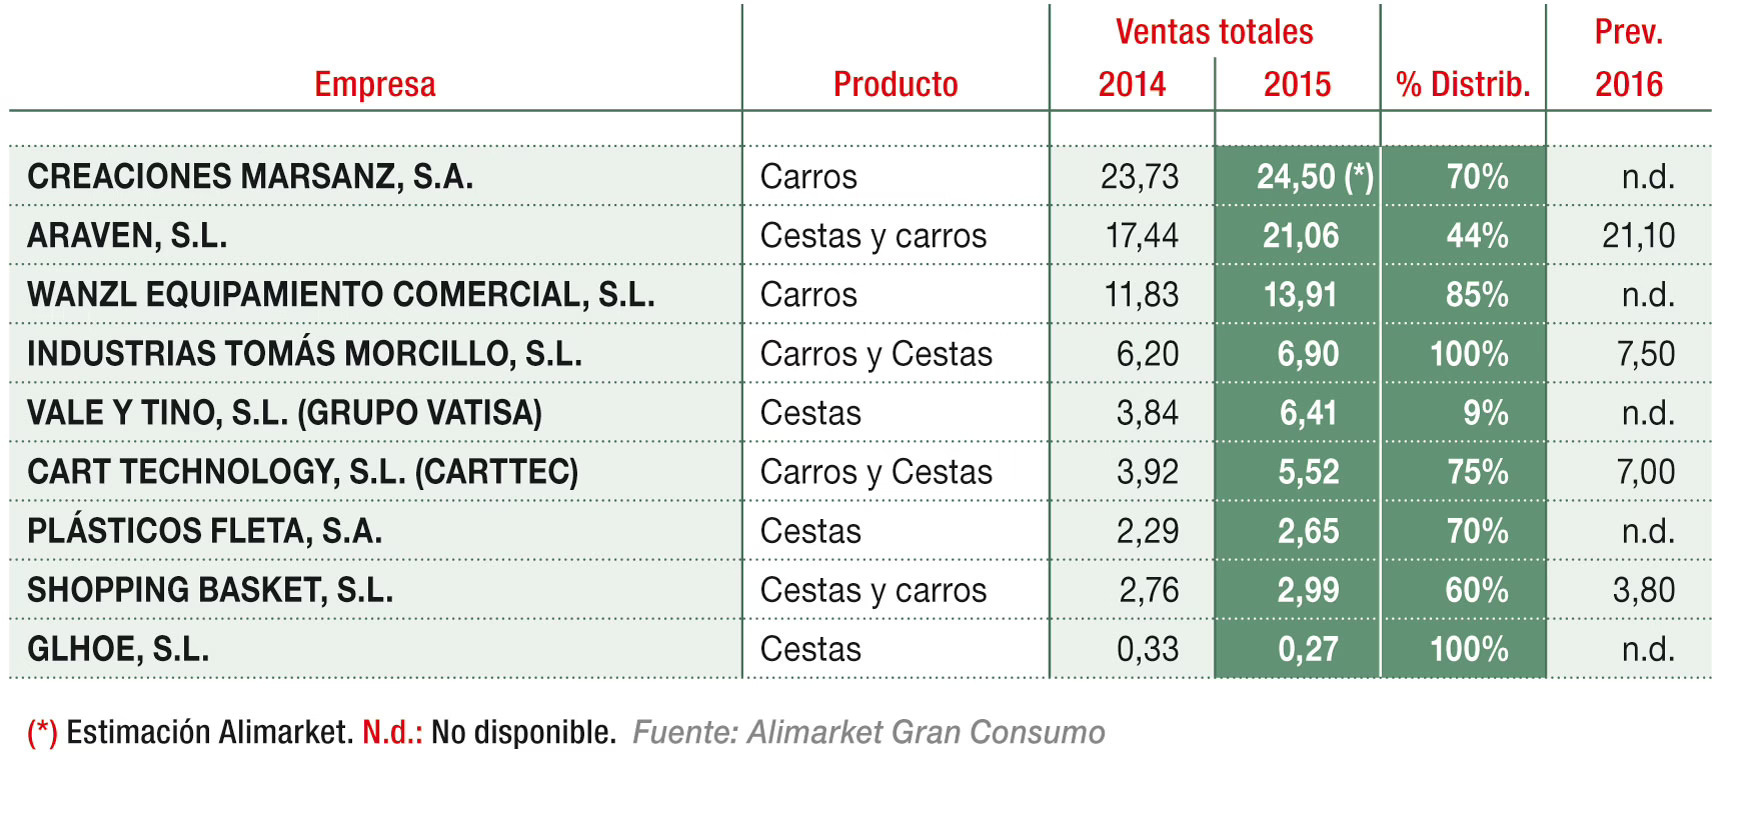 Principales empresas de carros y cestas para supermercados/hipermercados (M€)